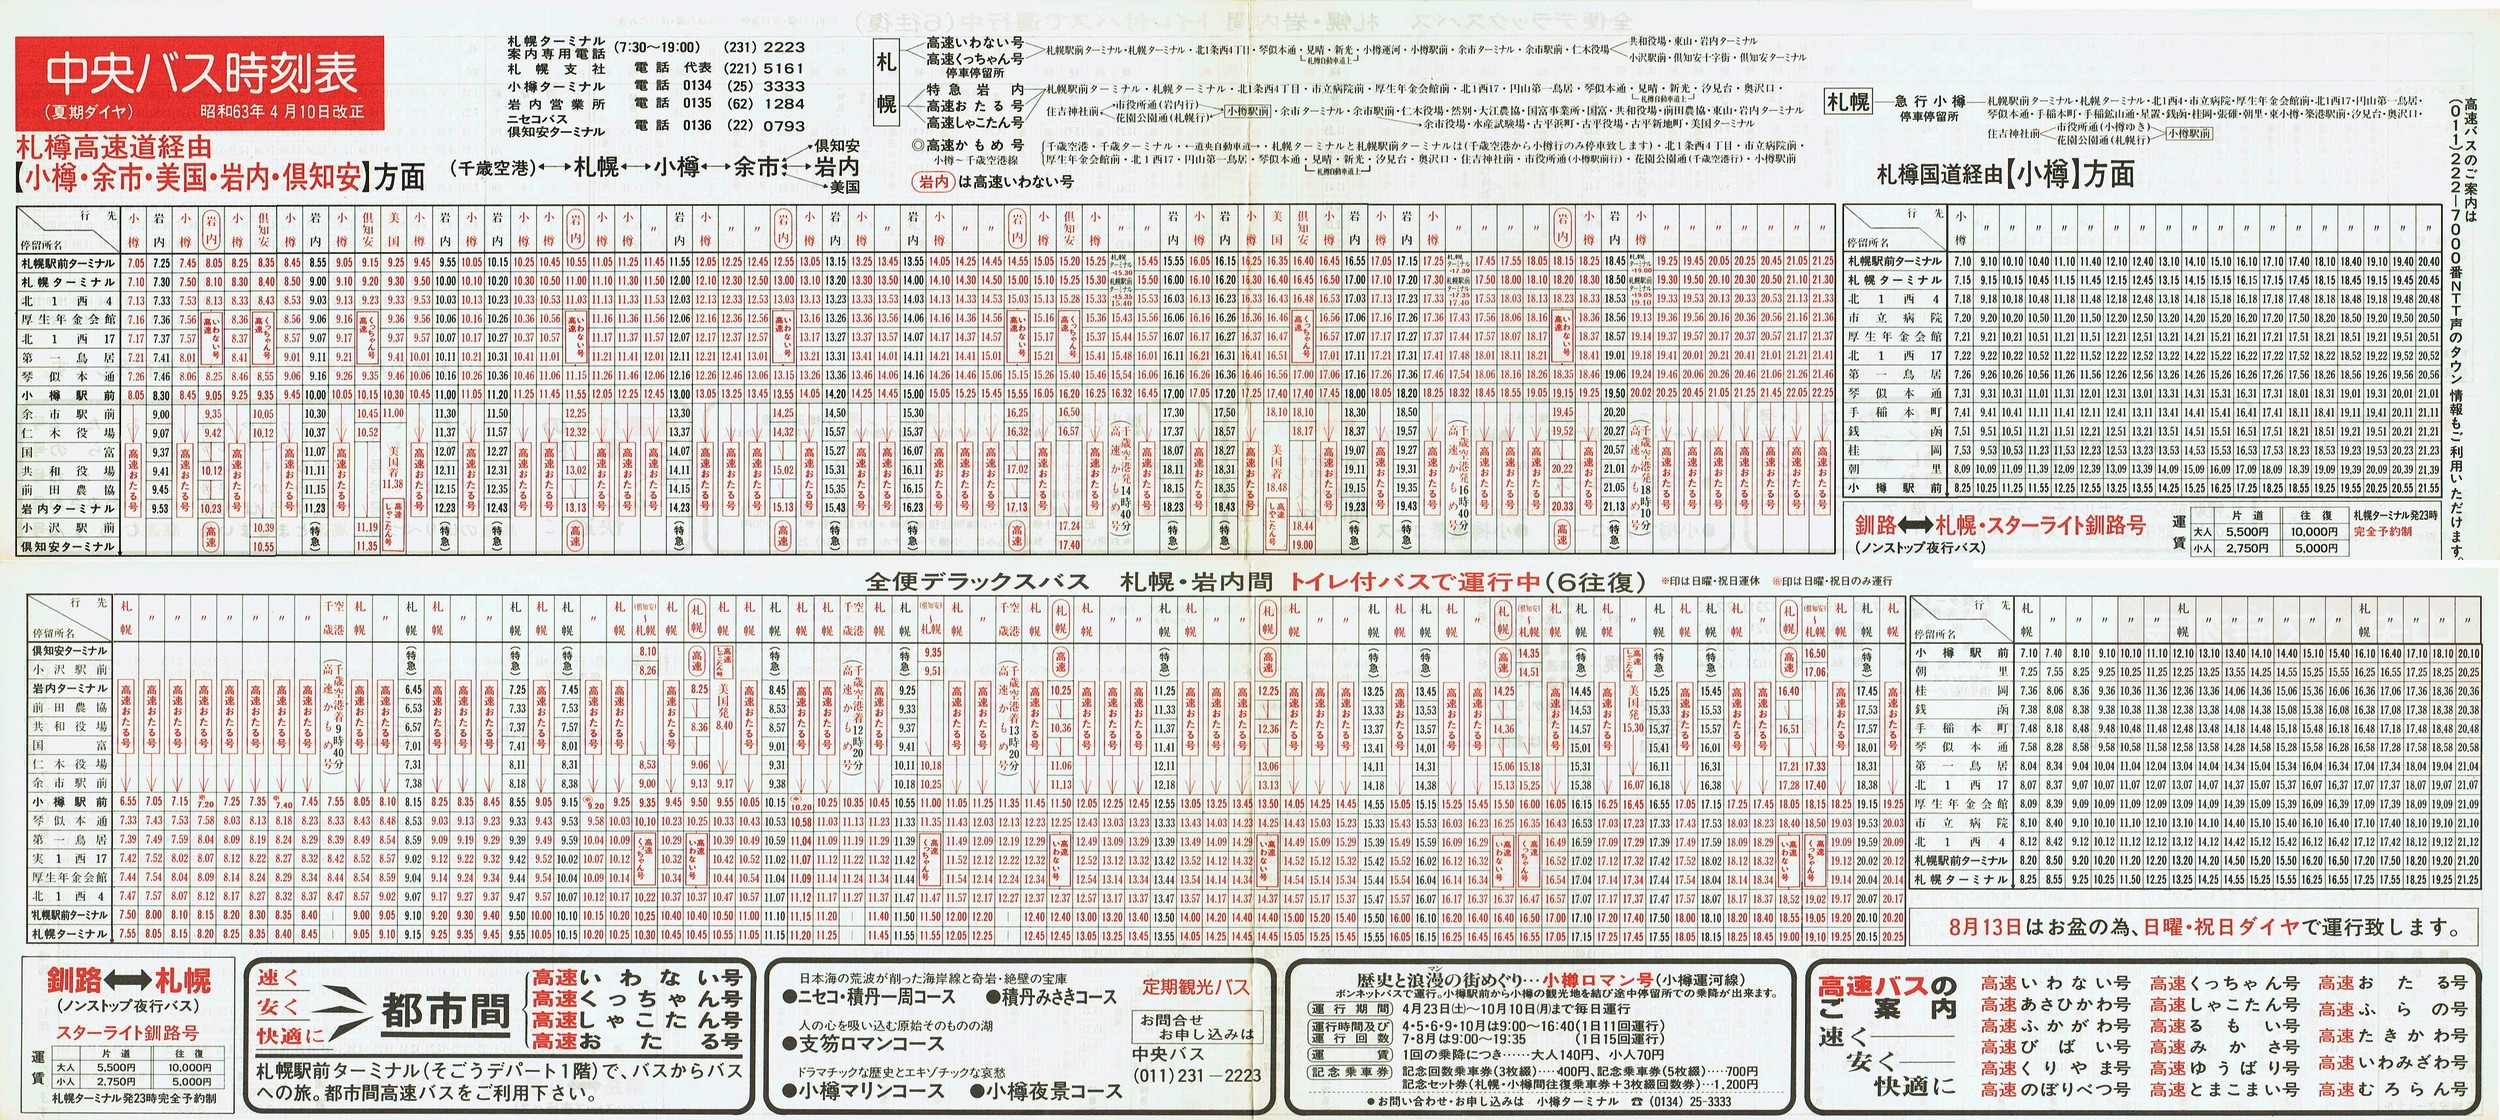 1988-04-10改正_北海道中央バス(札幌)_小樽・美国・岩内・倶知安方面時刻表